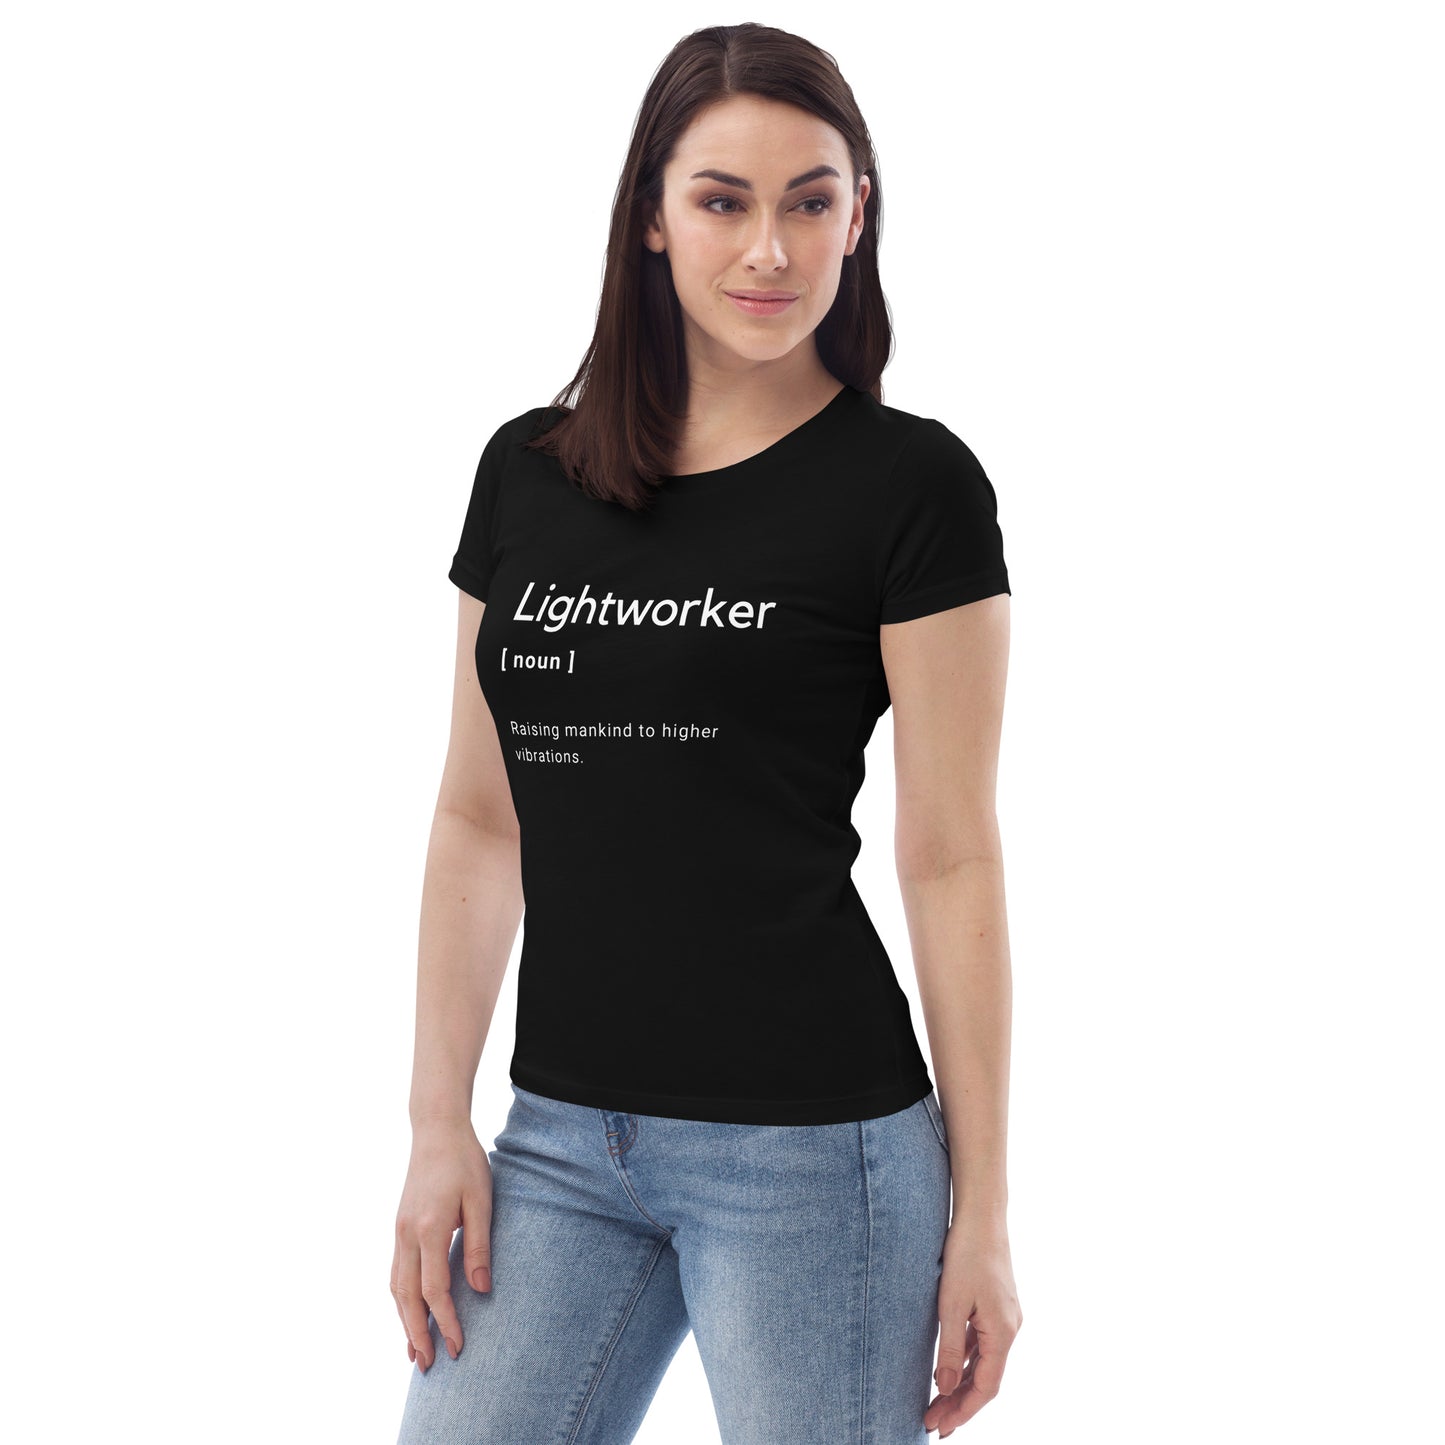 Lightworker t-shirt